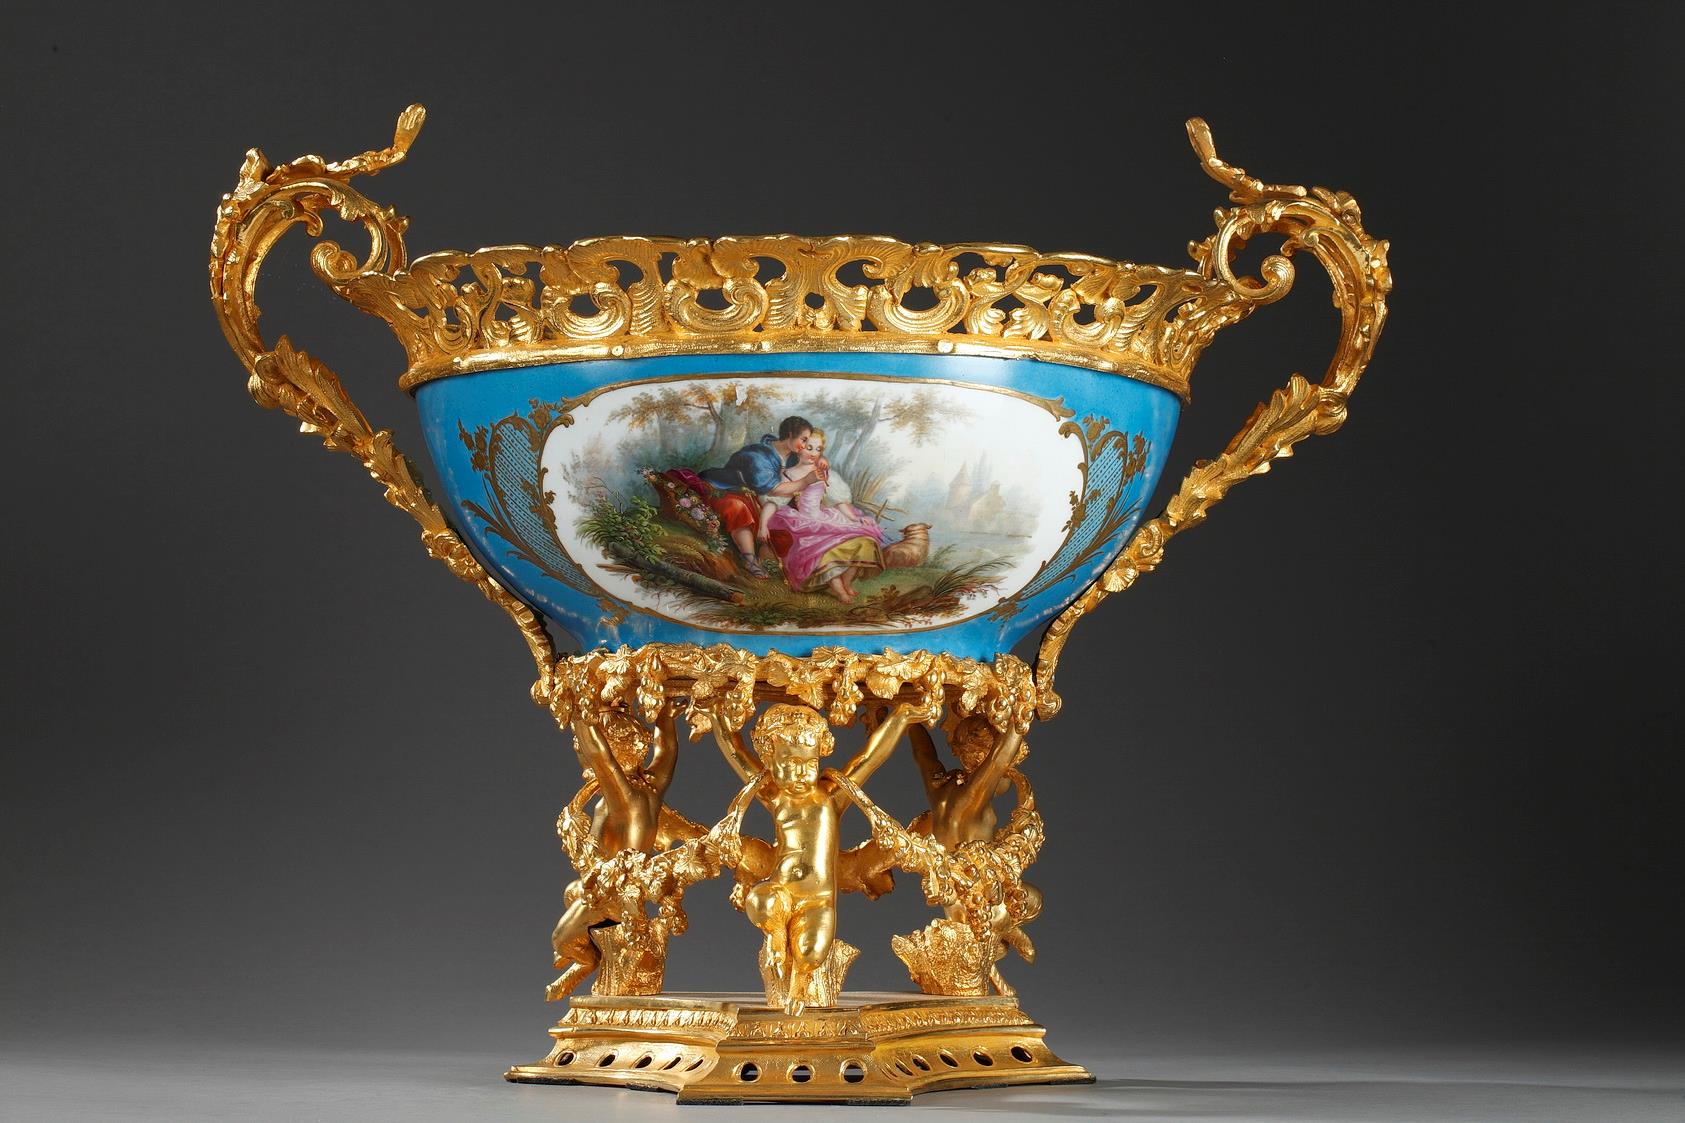 Porcelain-mounted gilded bronze. 
Napoleon III